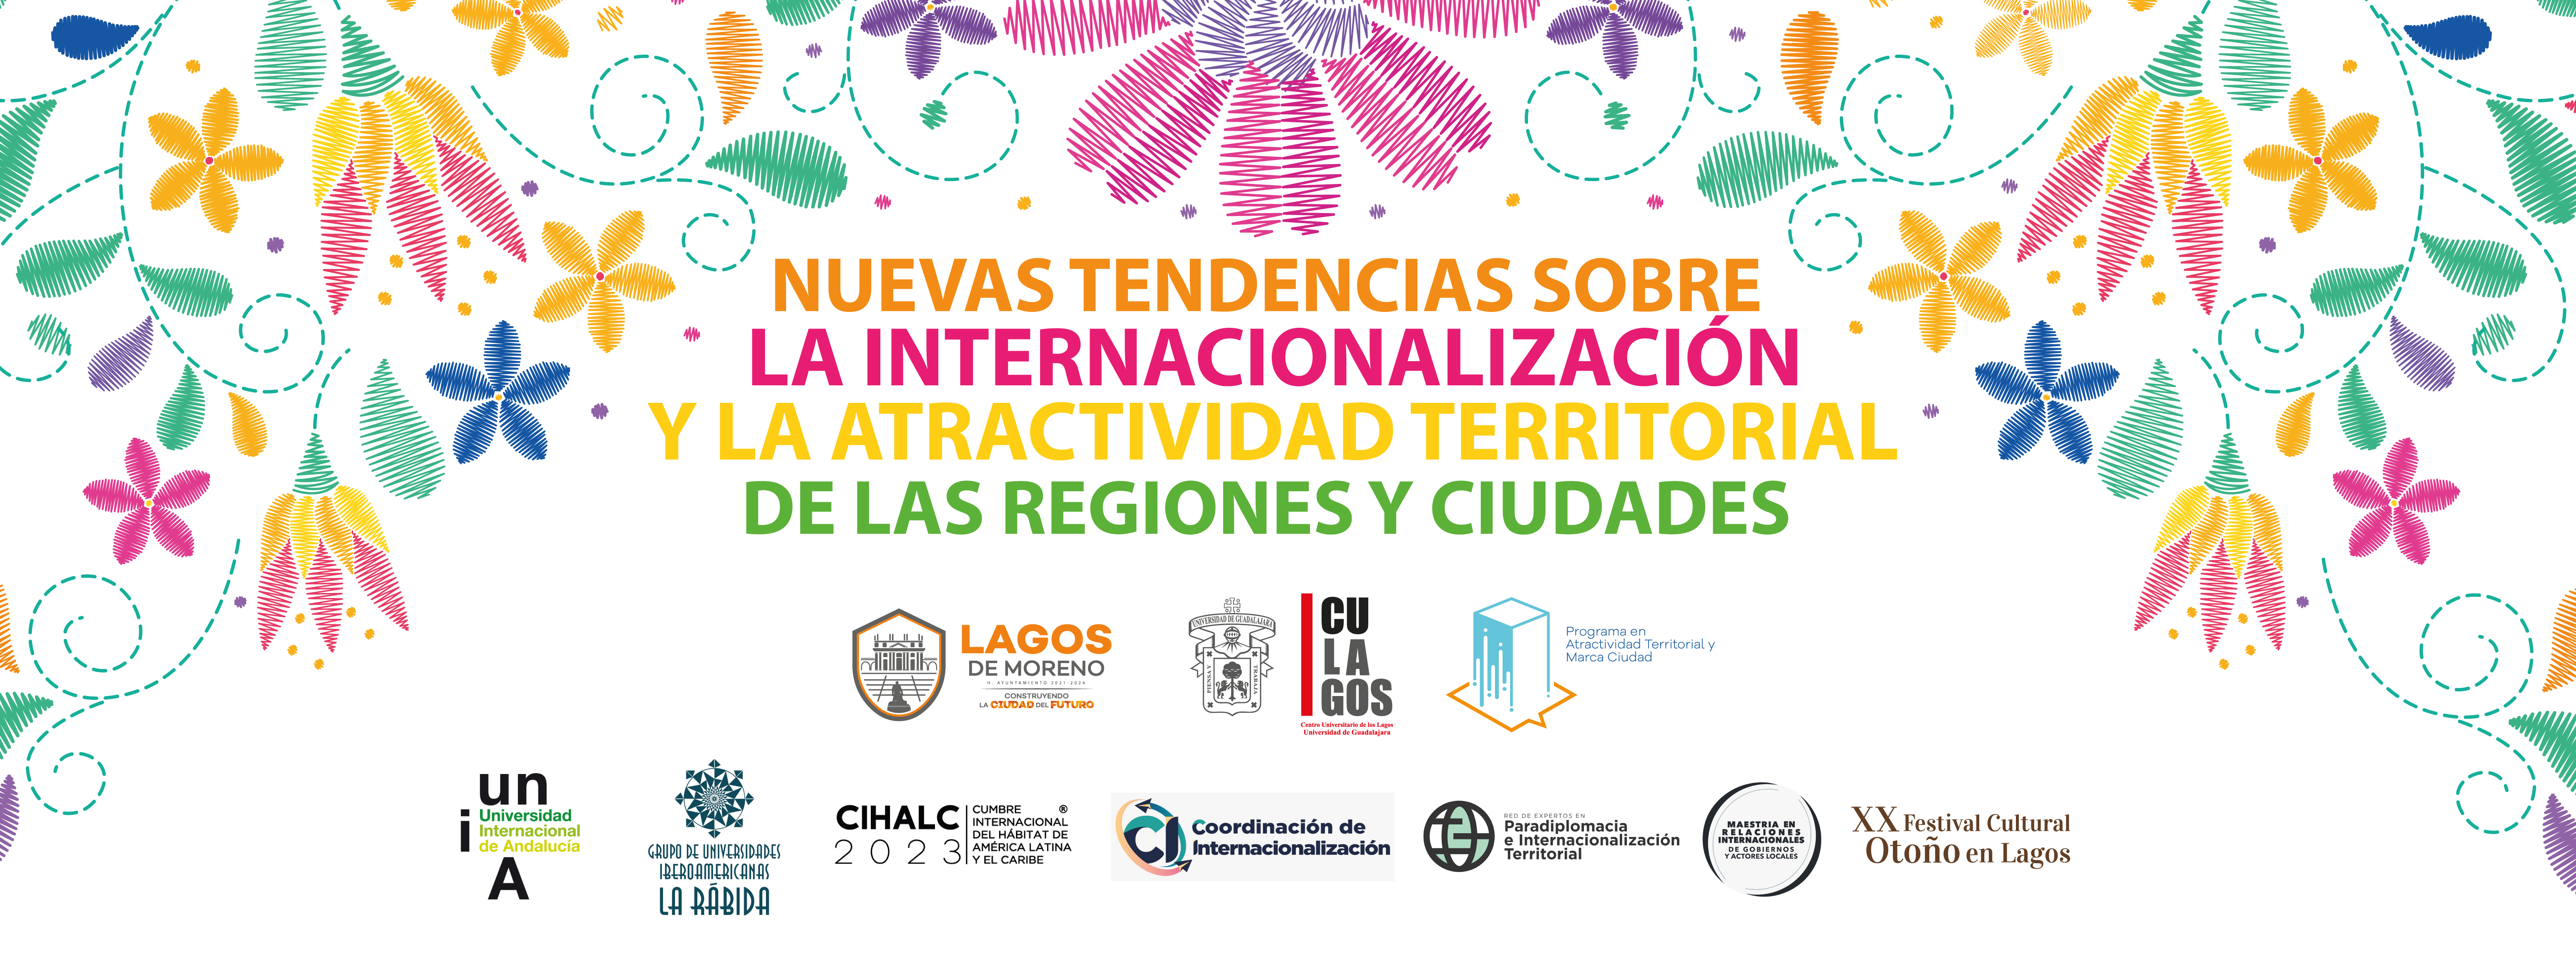 Nuevas Tendencias sobre La internacionalización y la atractividad territorial de las regiones y ciudades